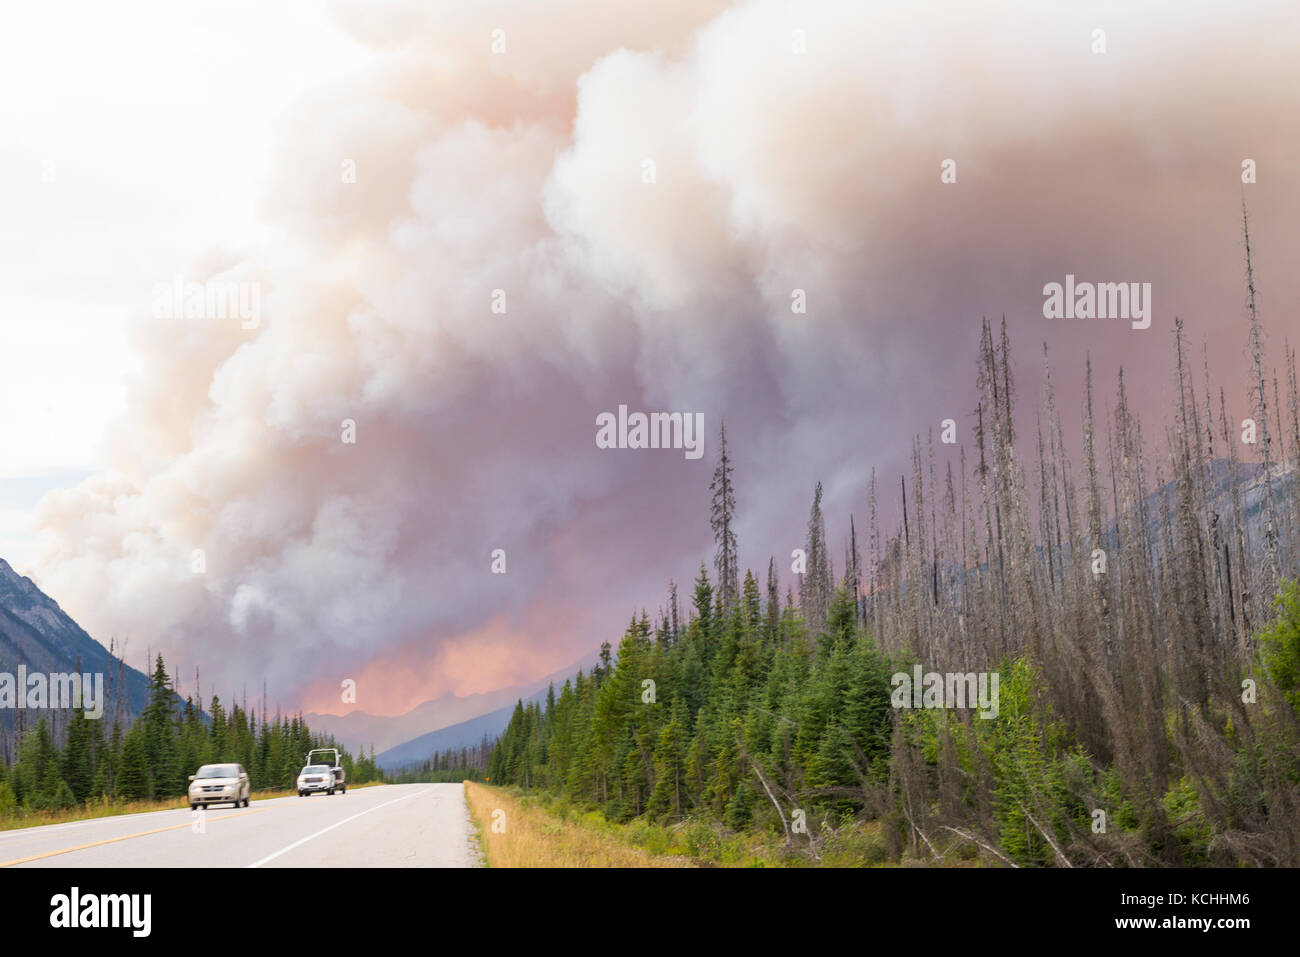 Se coló el tráfico a través de un incendio forestal en el Parque Nacional de Kootenay, A.C. Foto de stock